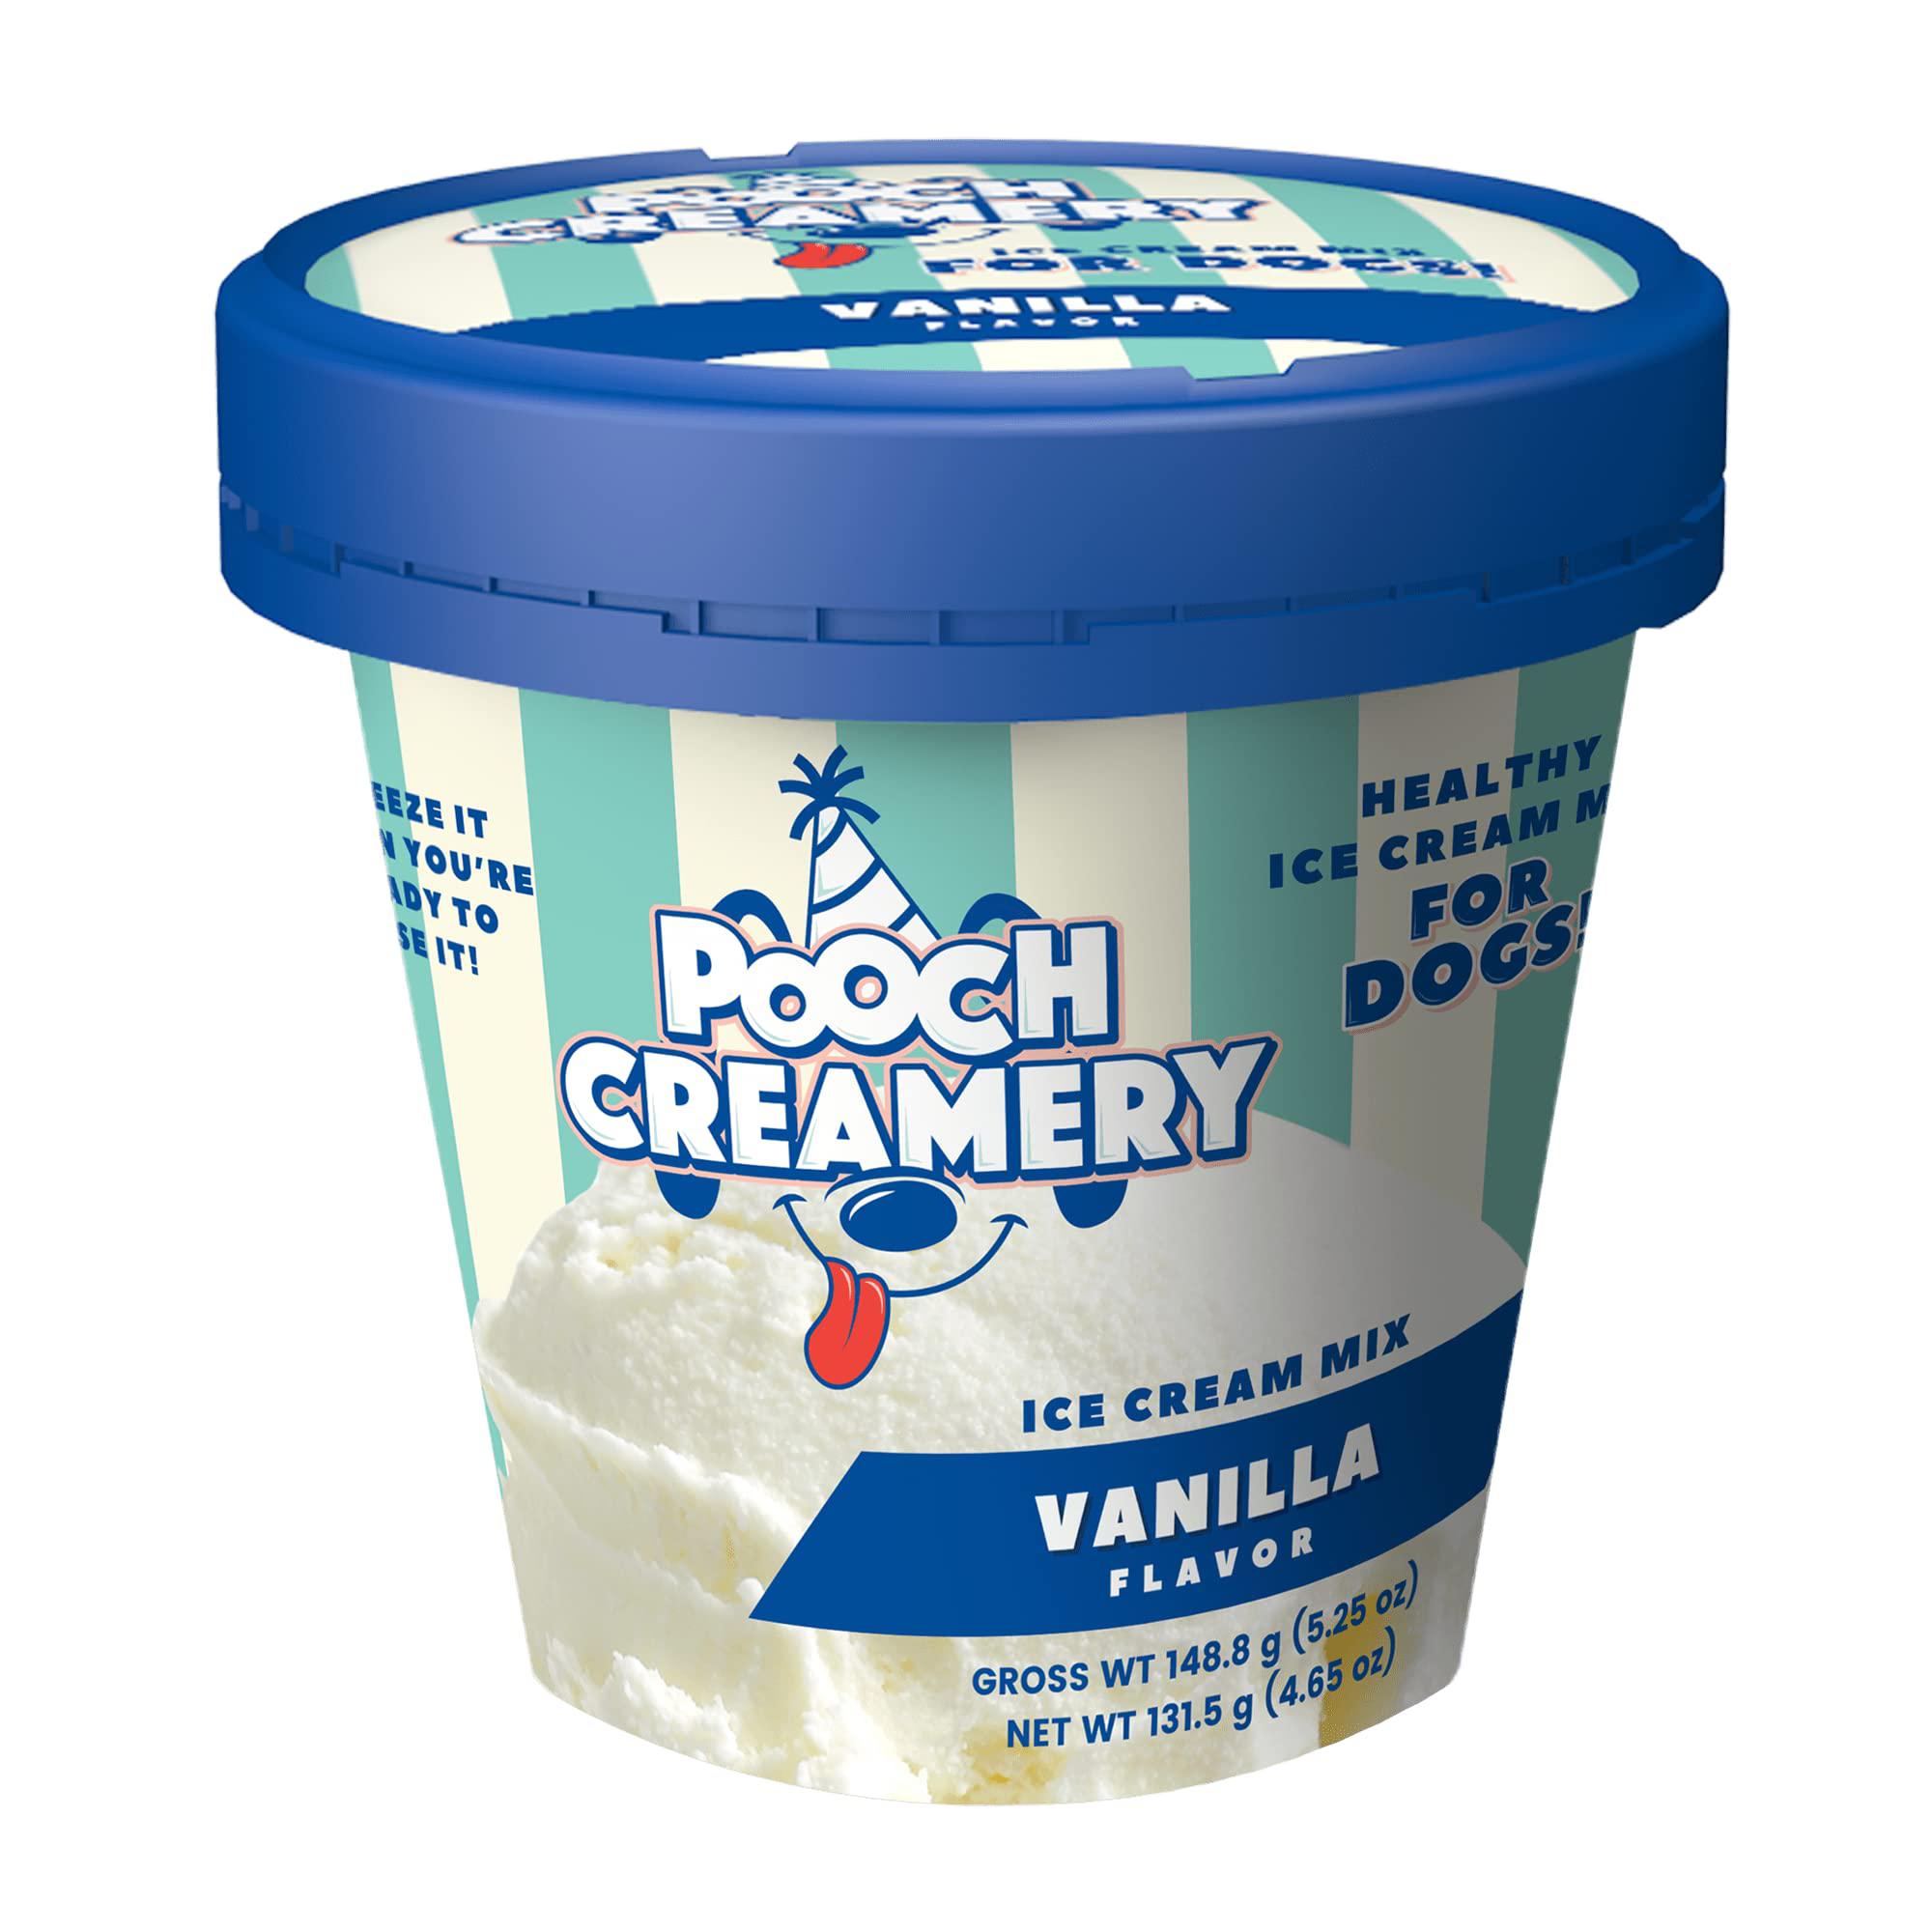 pooch creamery ice cream mix vanilla dog treats, 4.65 oz.